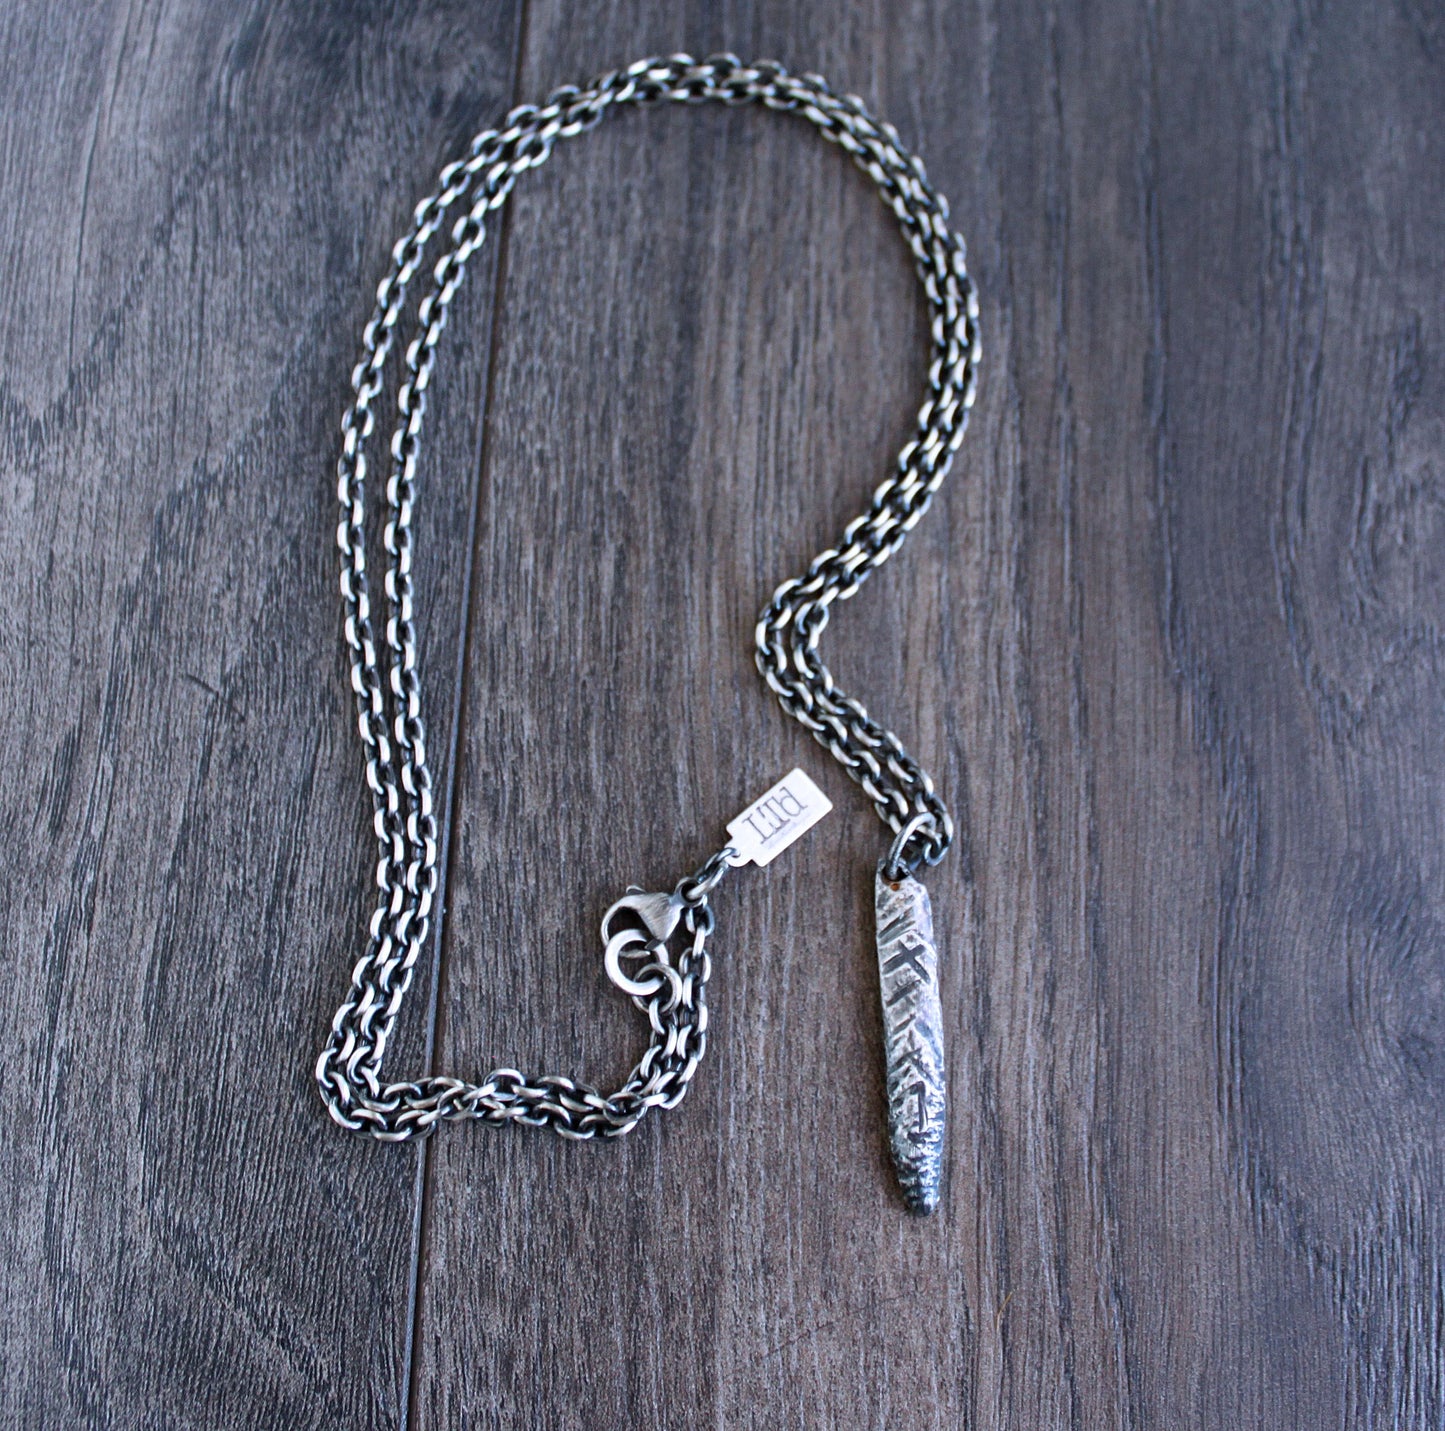 Hammered Brutalist Silver Bar Pendant Necklace